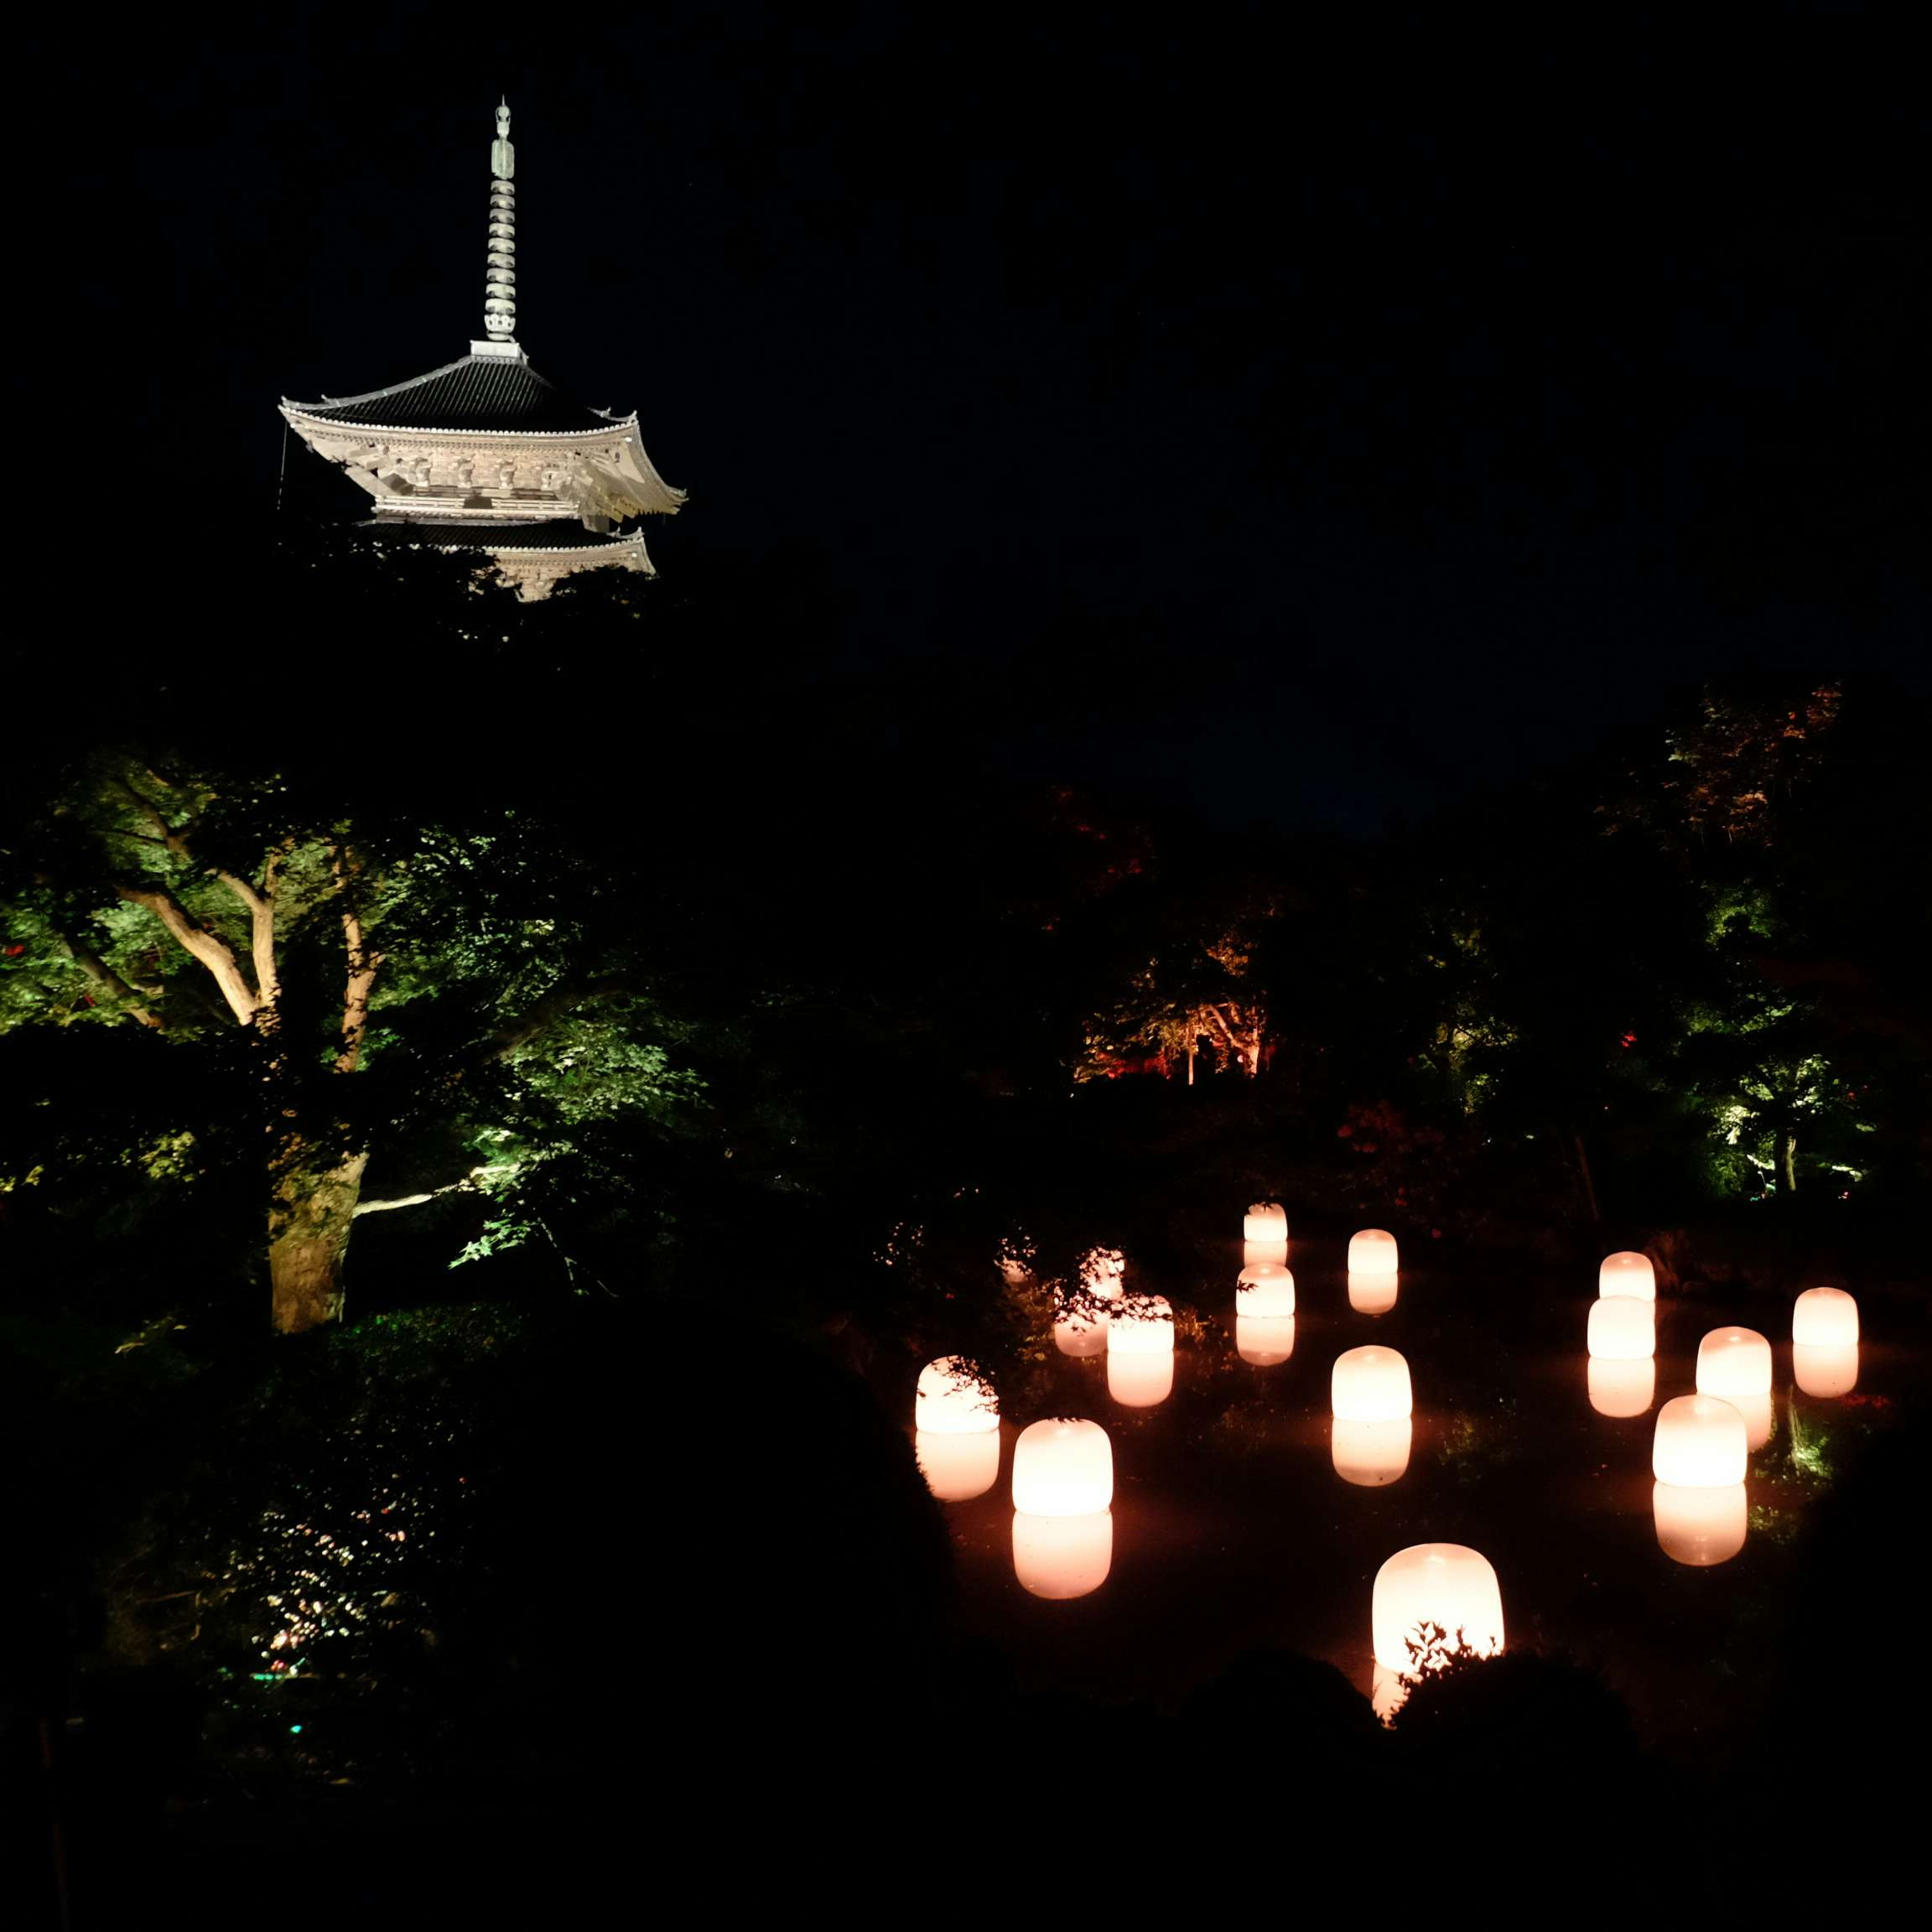 京都 東寺を舞台に チームラボ 東寺 光の祭 Tokioインカラミ が開幕 音と光で世界遺産がアートスポットに 美術手帖